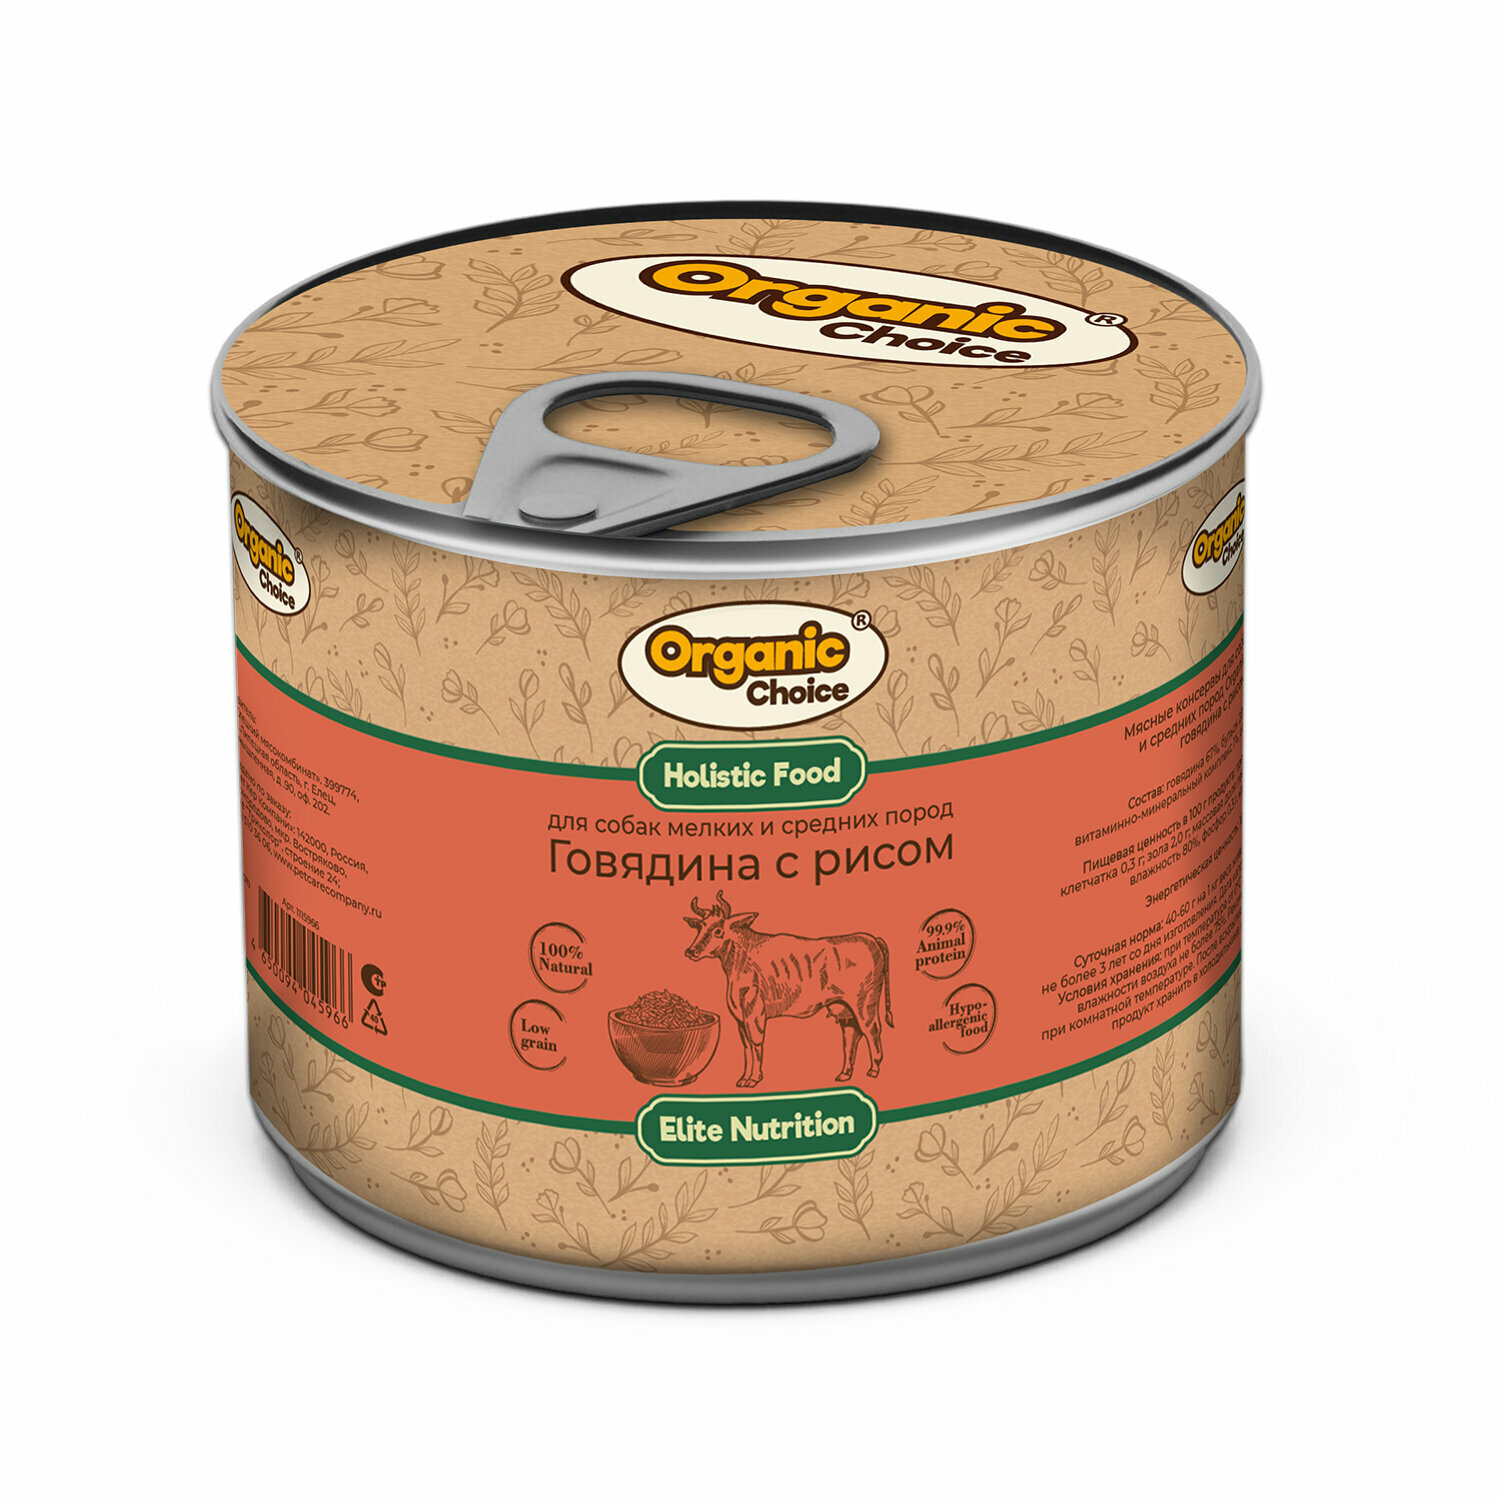 Organic Сhoice влажный корм для собак малых и средних пород говядина с рисом (12шт в уп) 240 гр